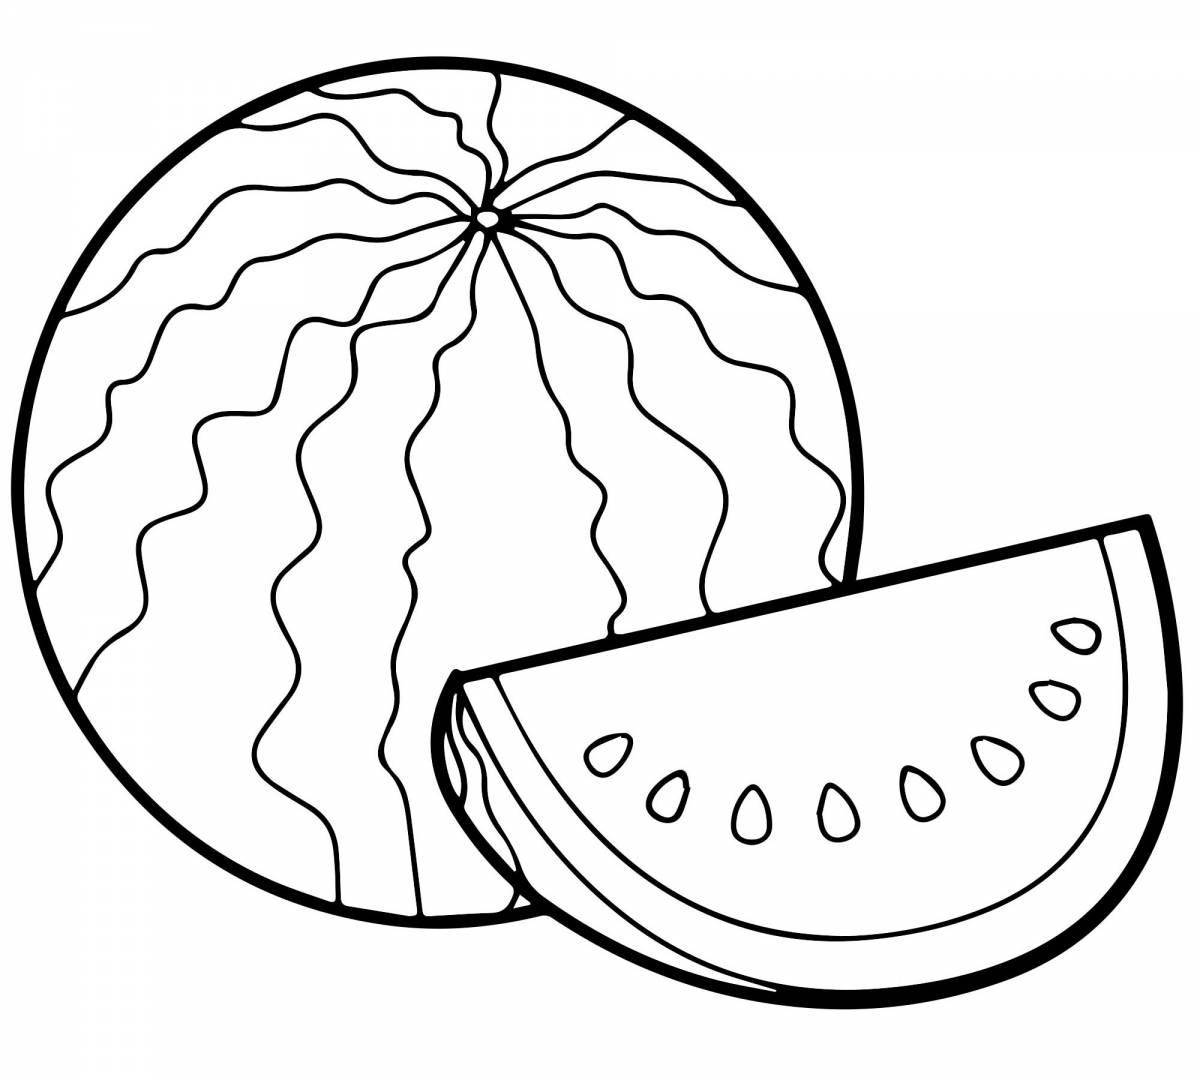 Fun watermelon drawing